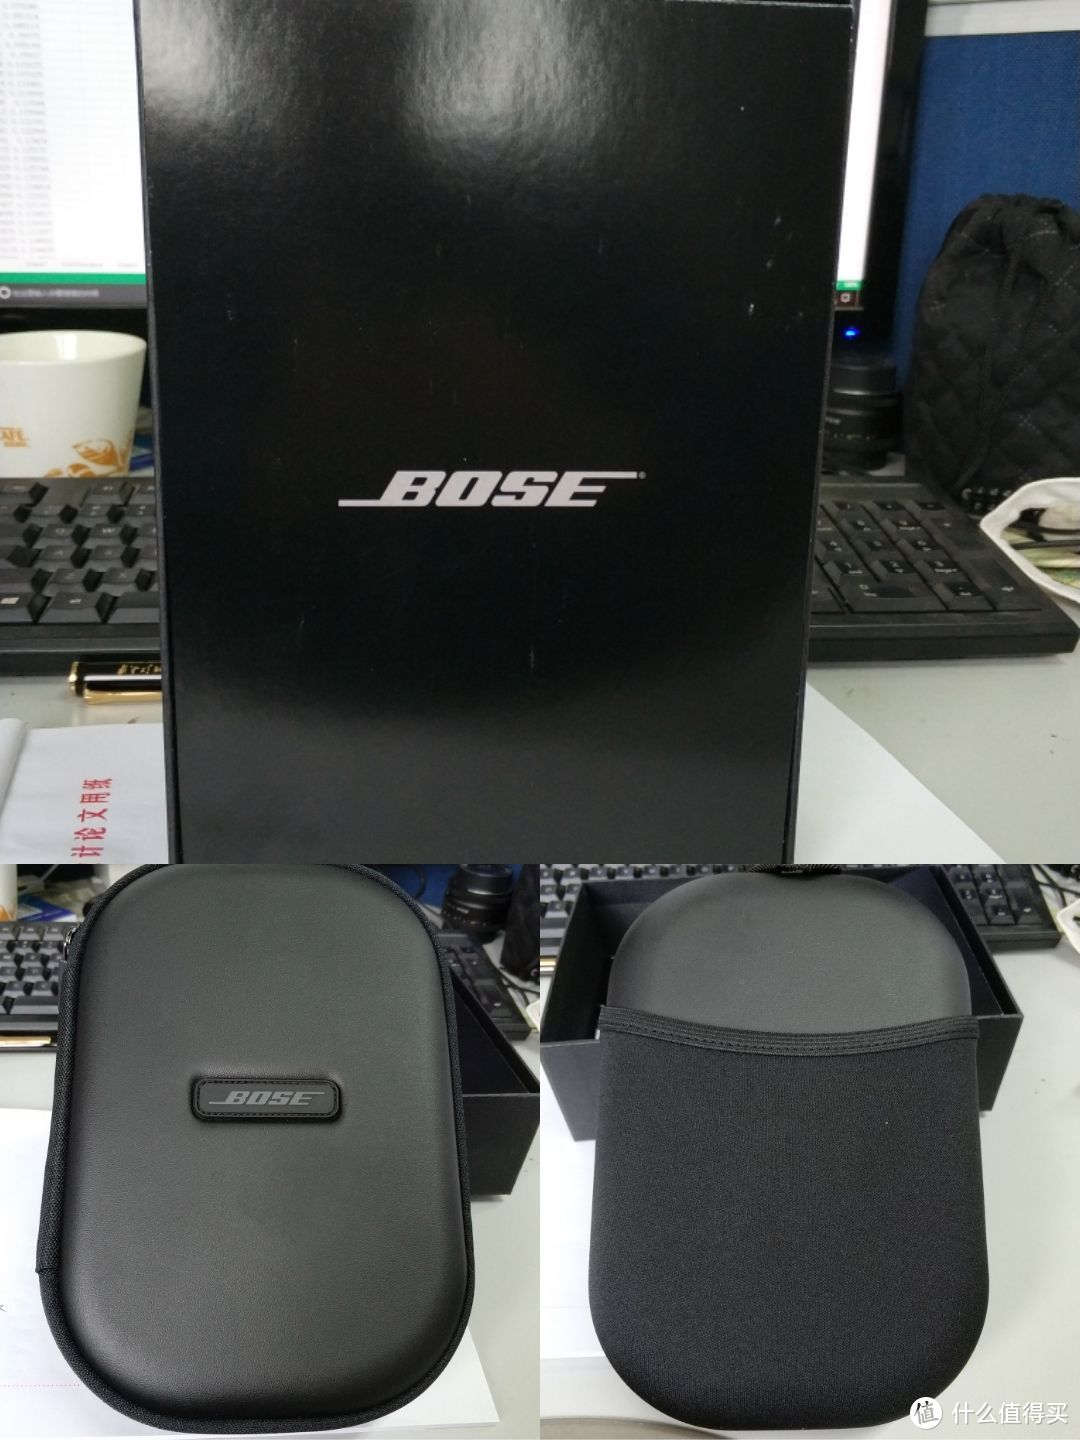 #晒单大赛# 亚马逊Z实惠入手Bose QC35 蓝牙降噪耳机